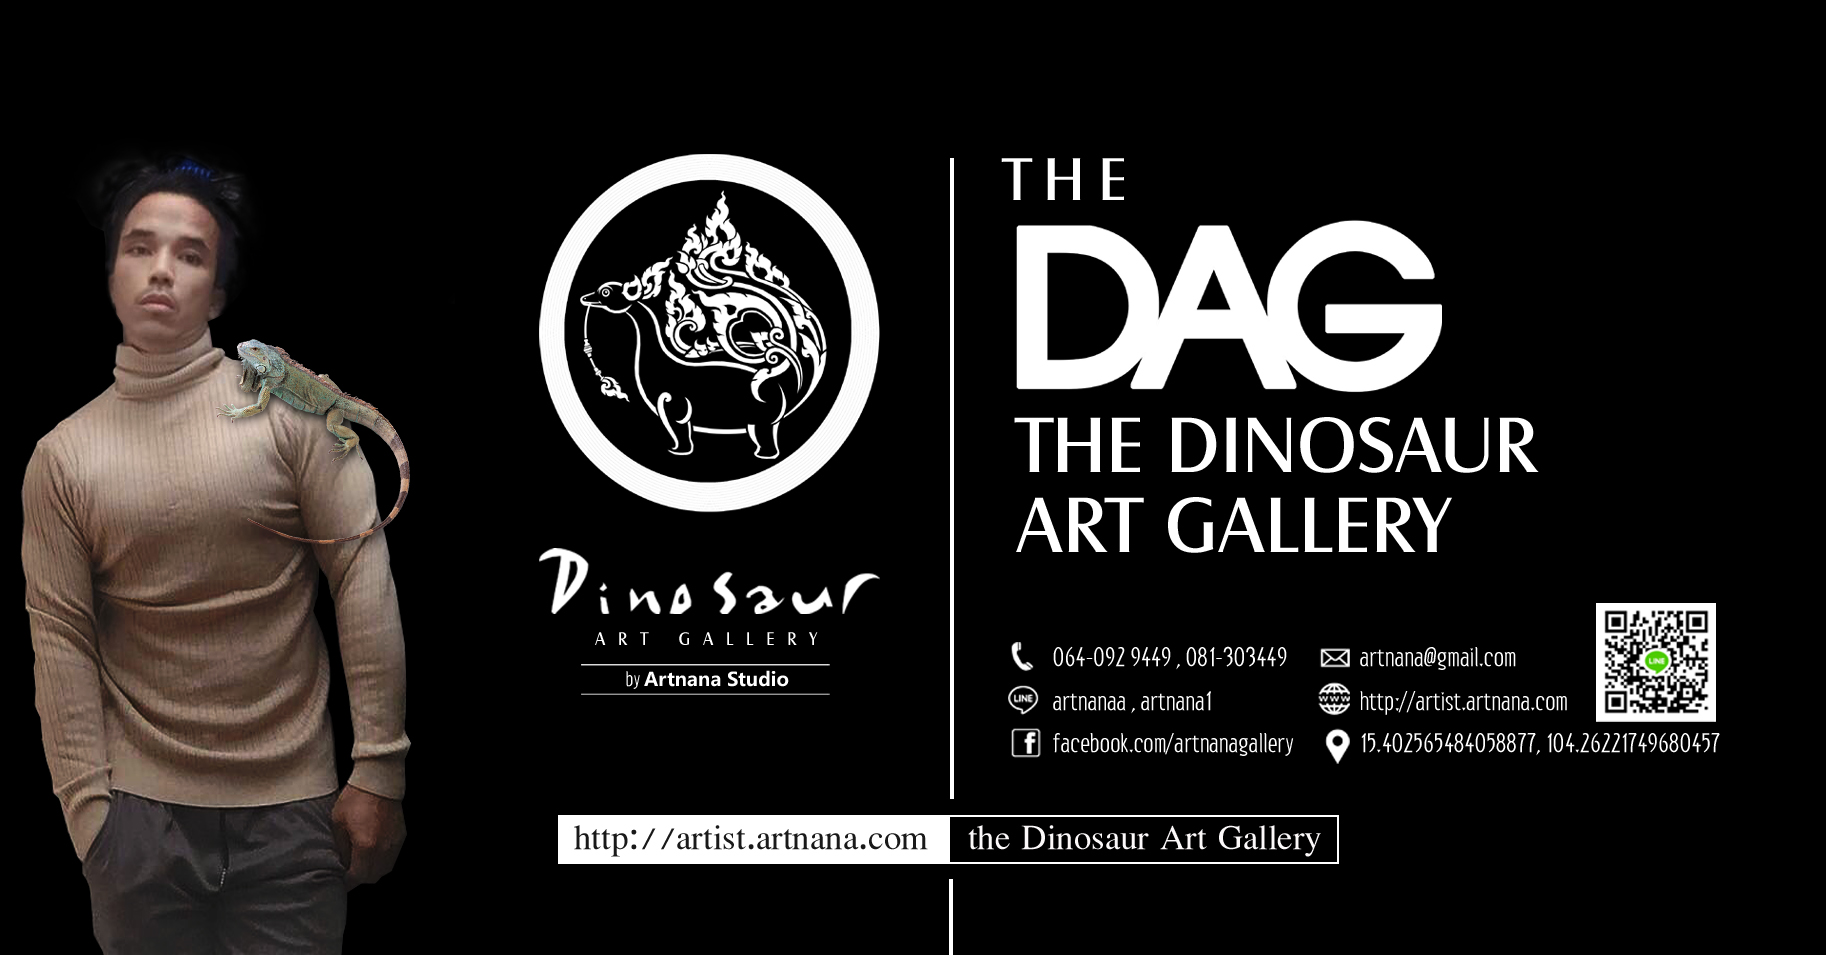 the Dinosaur Art Gallery (the DAG)